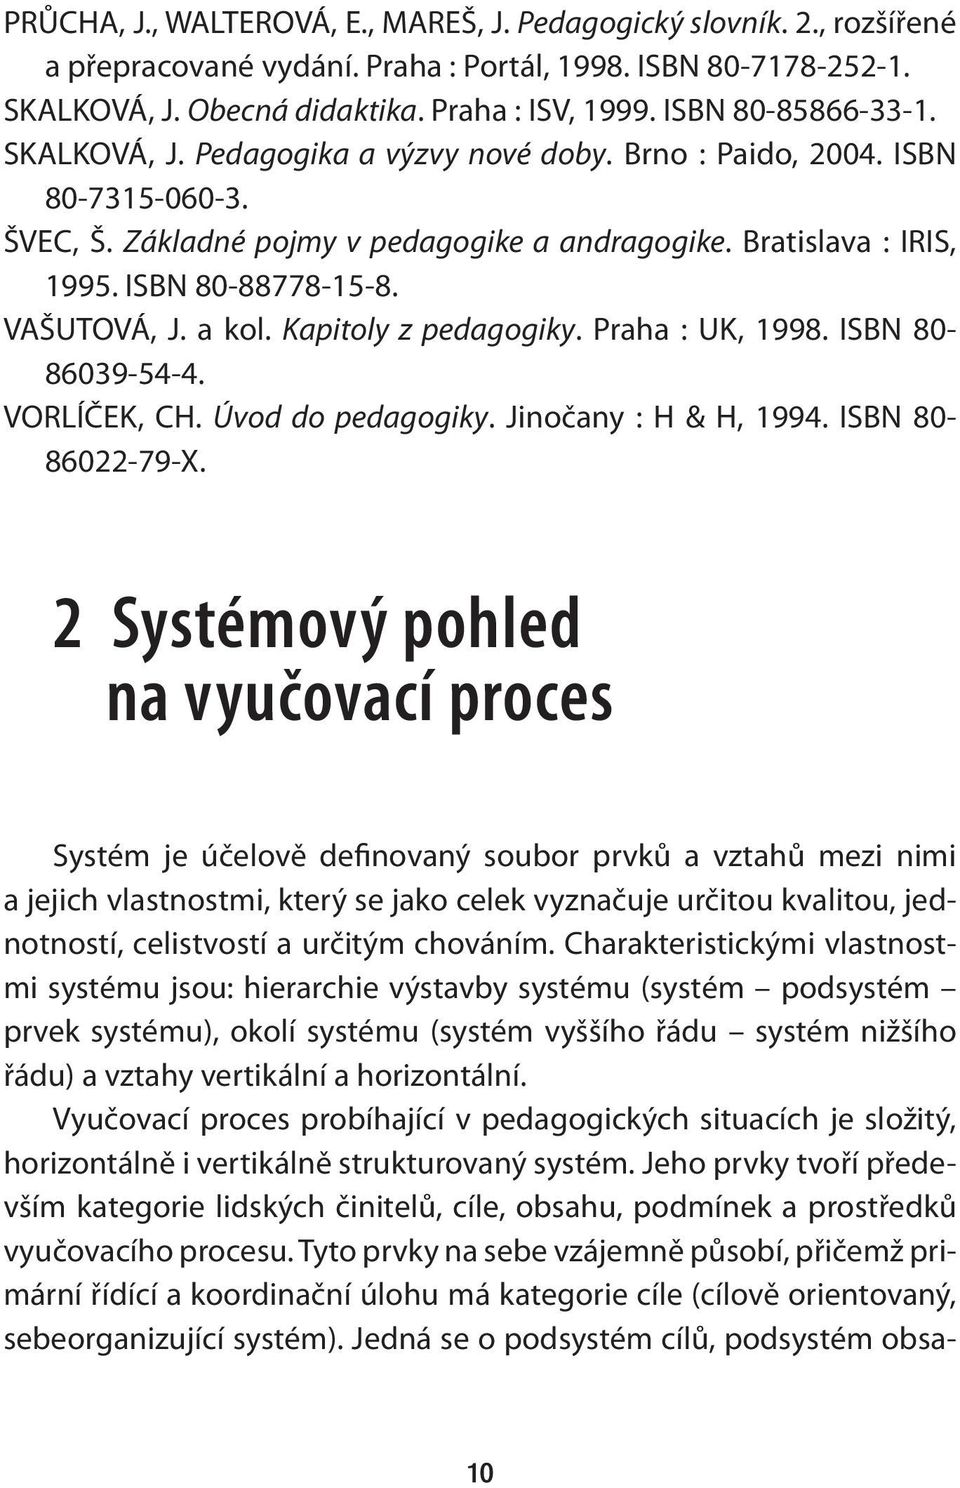 VAŠUTOVÁ, J. a kol. Kapitoly z pedagogiky. Praha : UK, 1998. ISBN 80-86039-54-4. VORLÍČEK, CH. Úvod do pedagogiky. Jinočany : H & H, 1994. ISBN 80-86022-79-X.